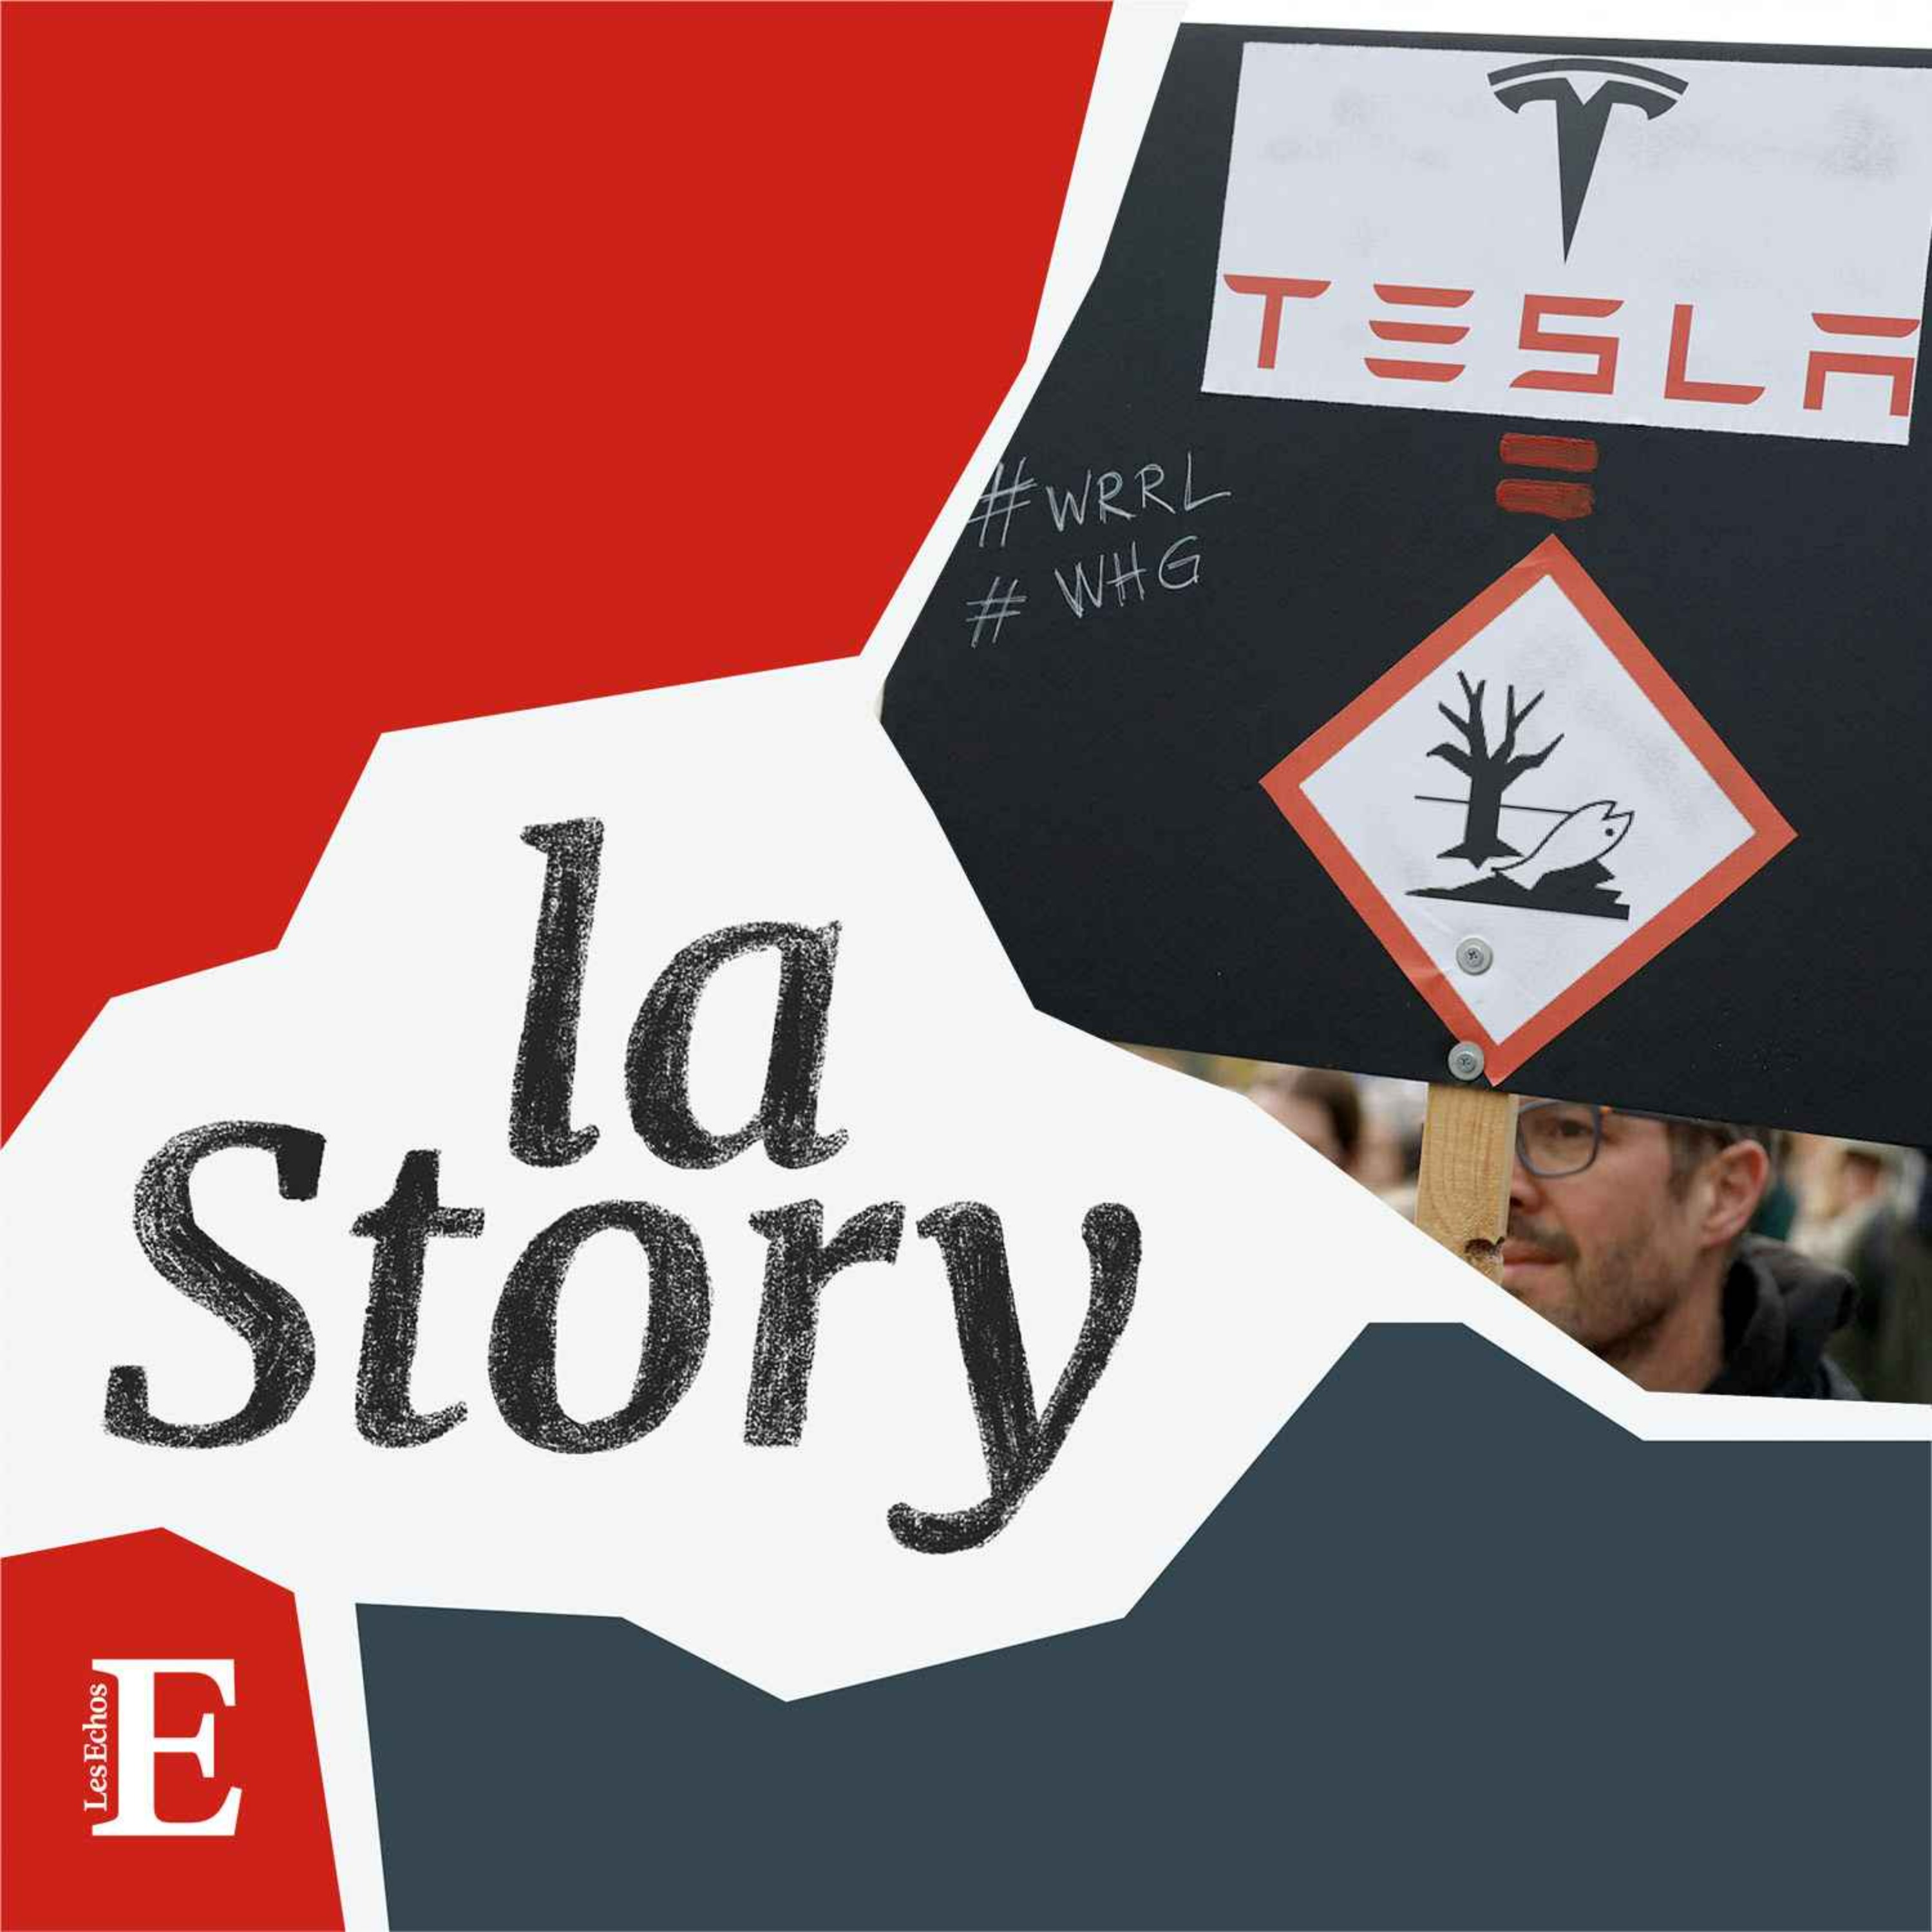 Tesla, la question allemande